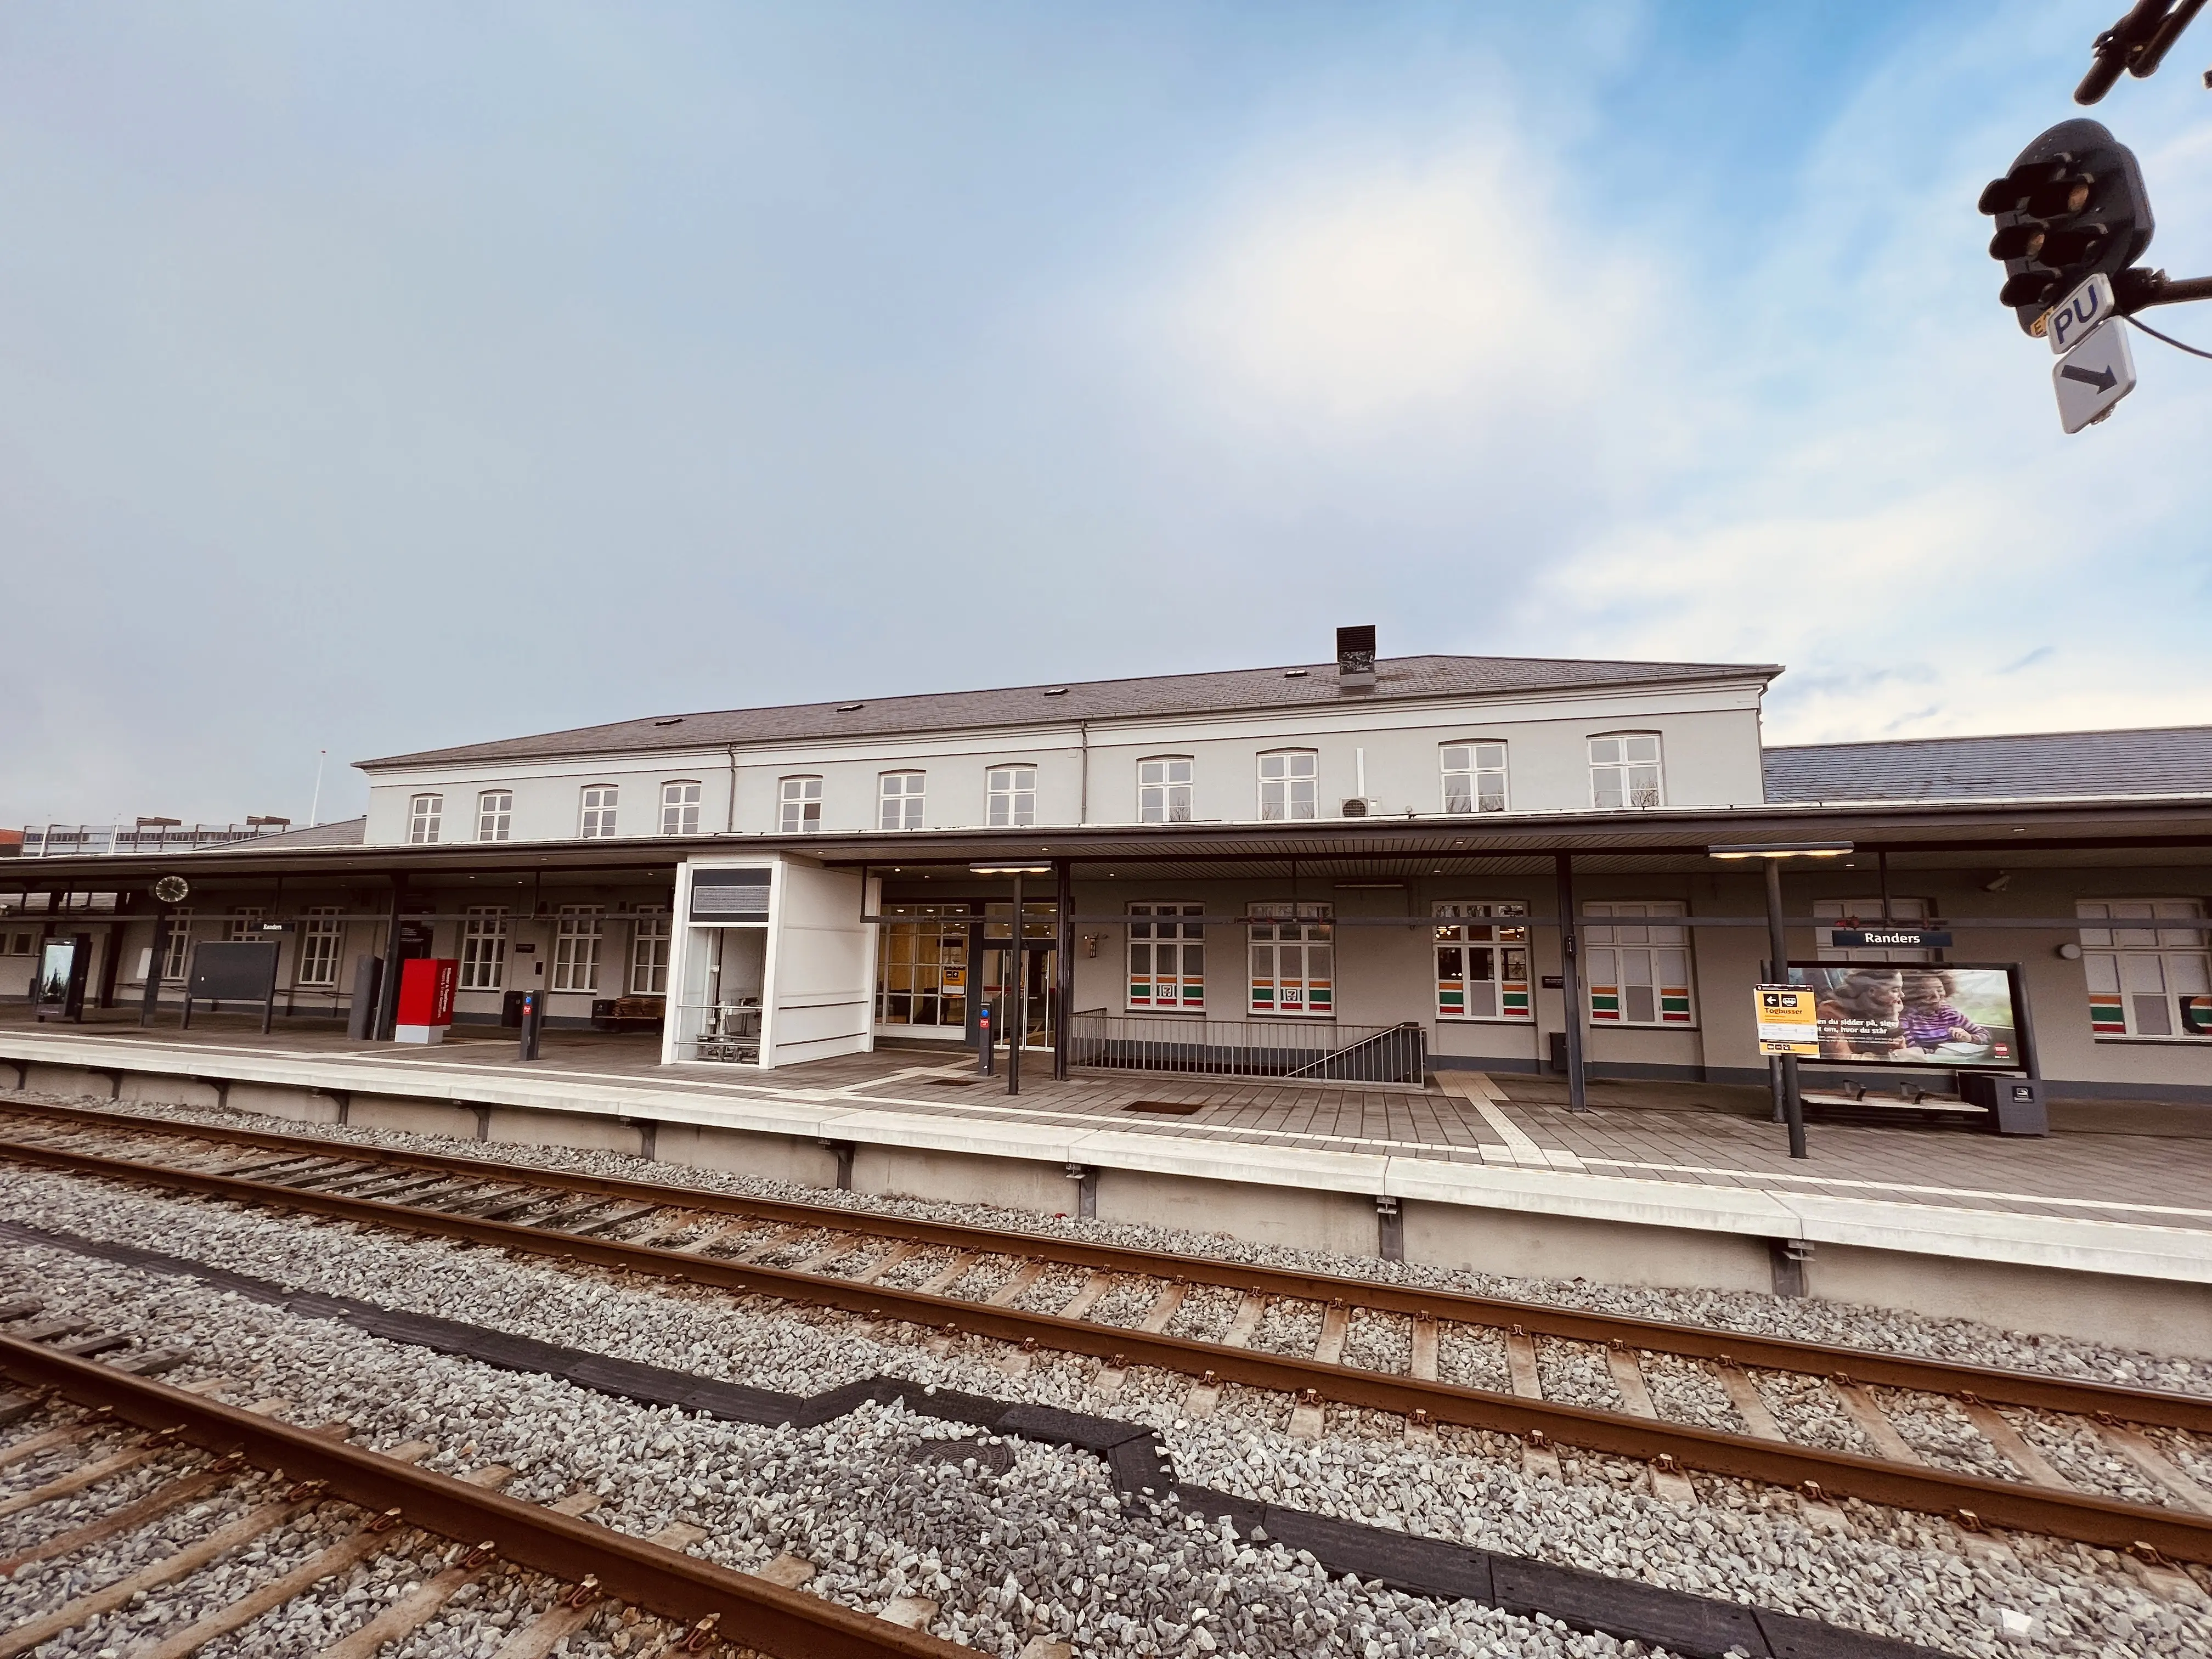 Billede af Randers Station.